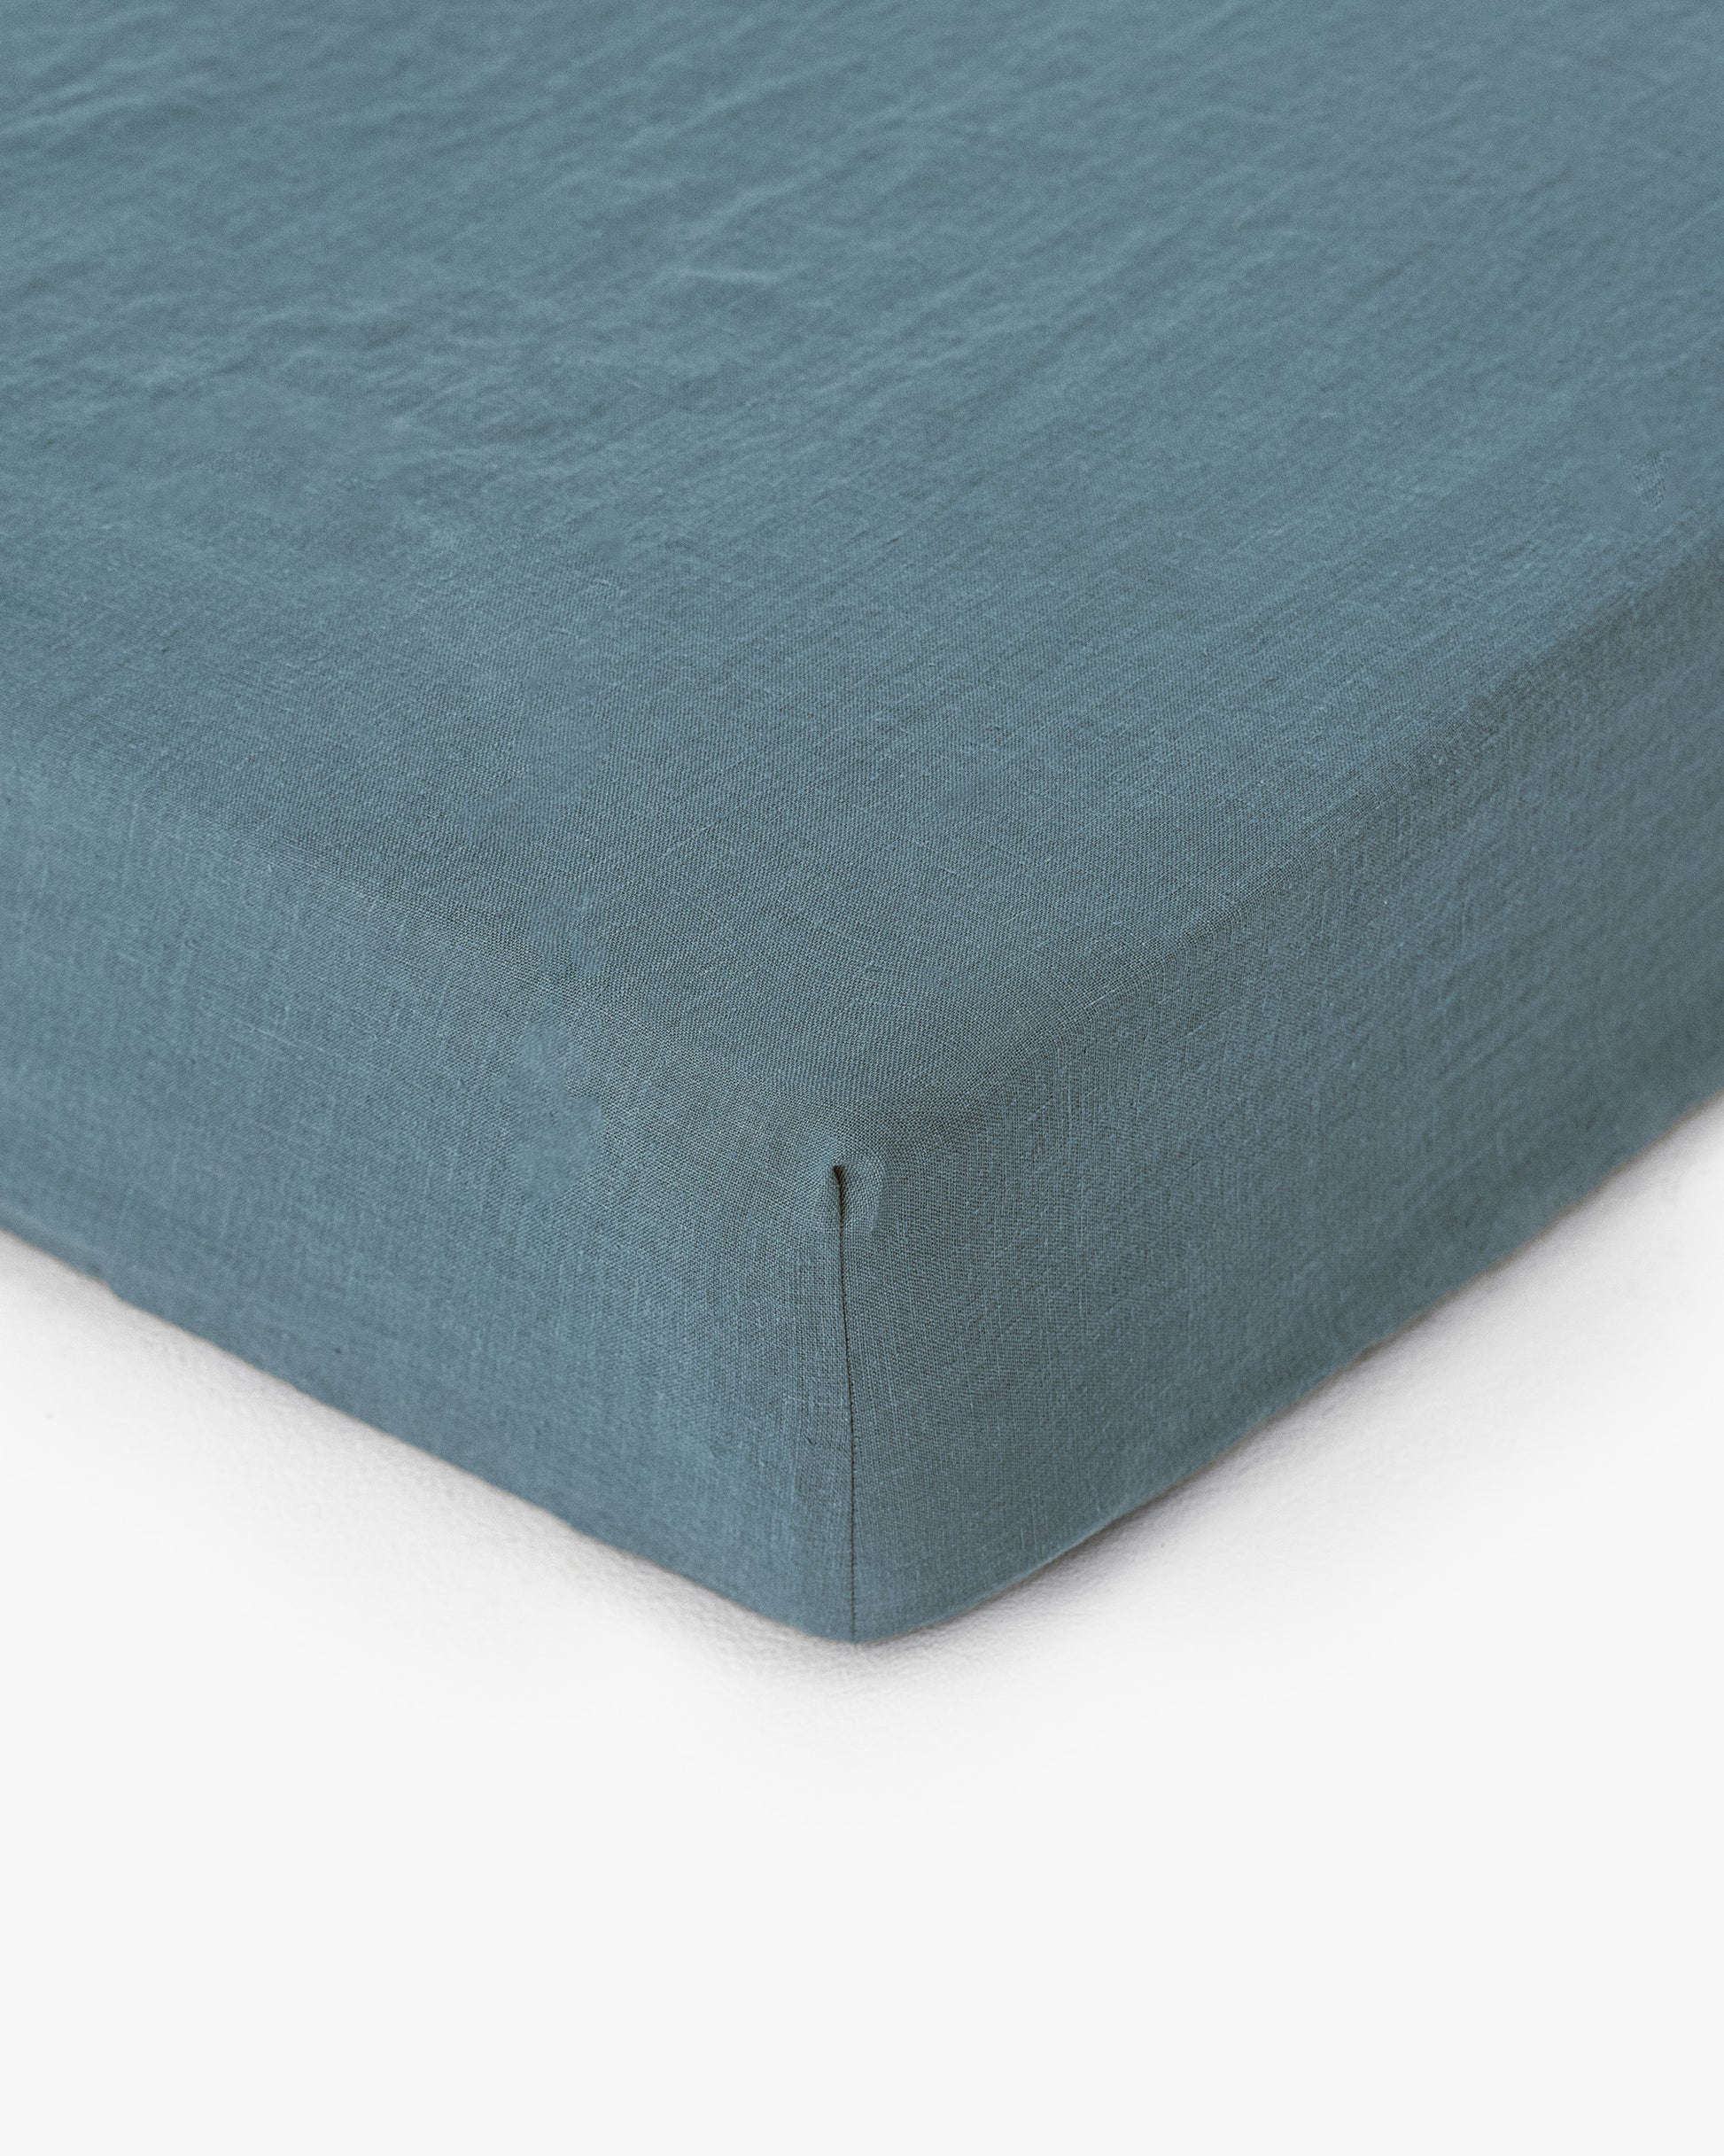 Gray blue linen fitted sheet - MagicLinen